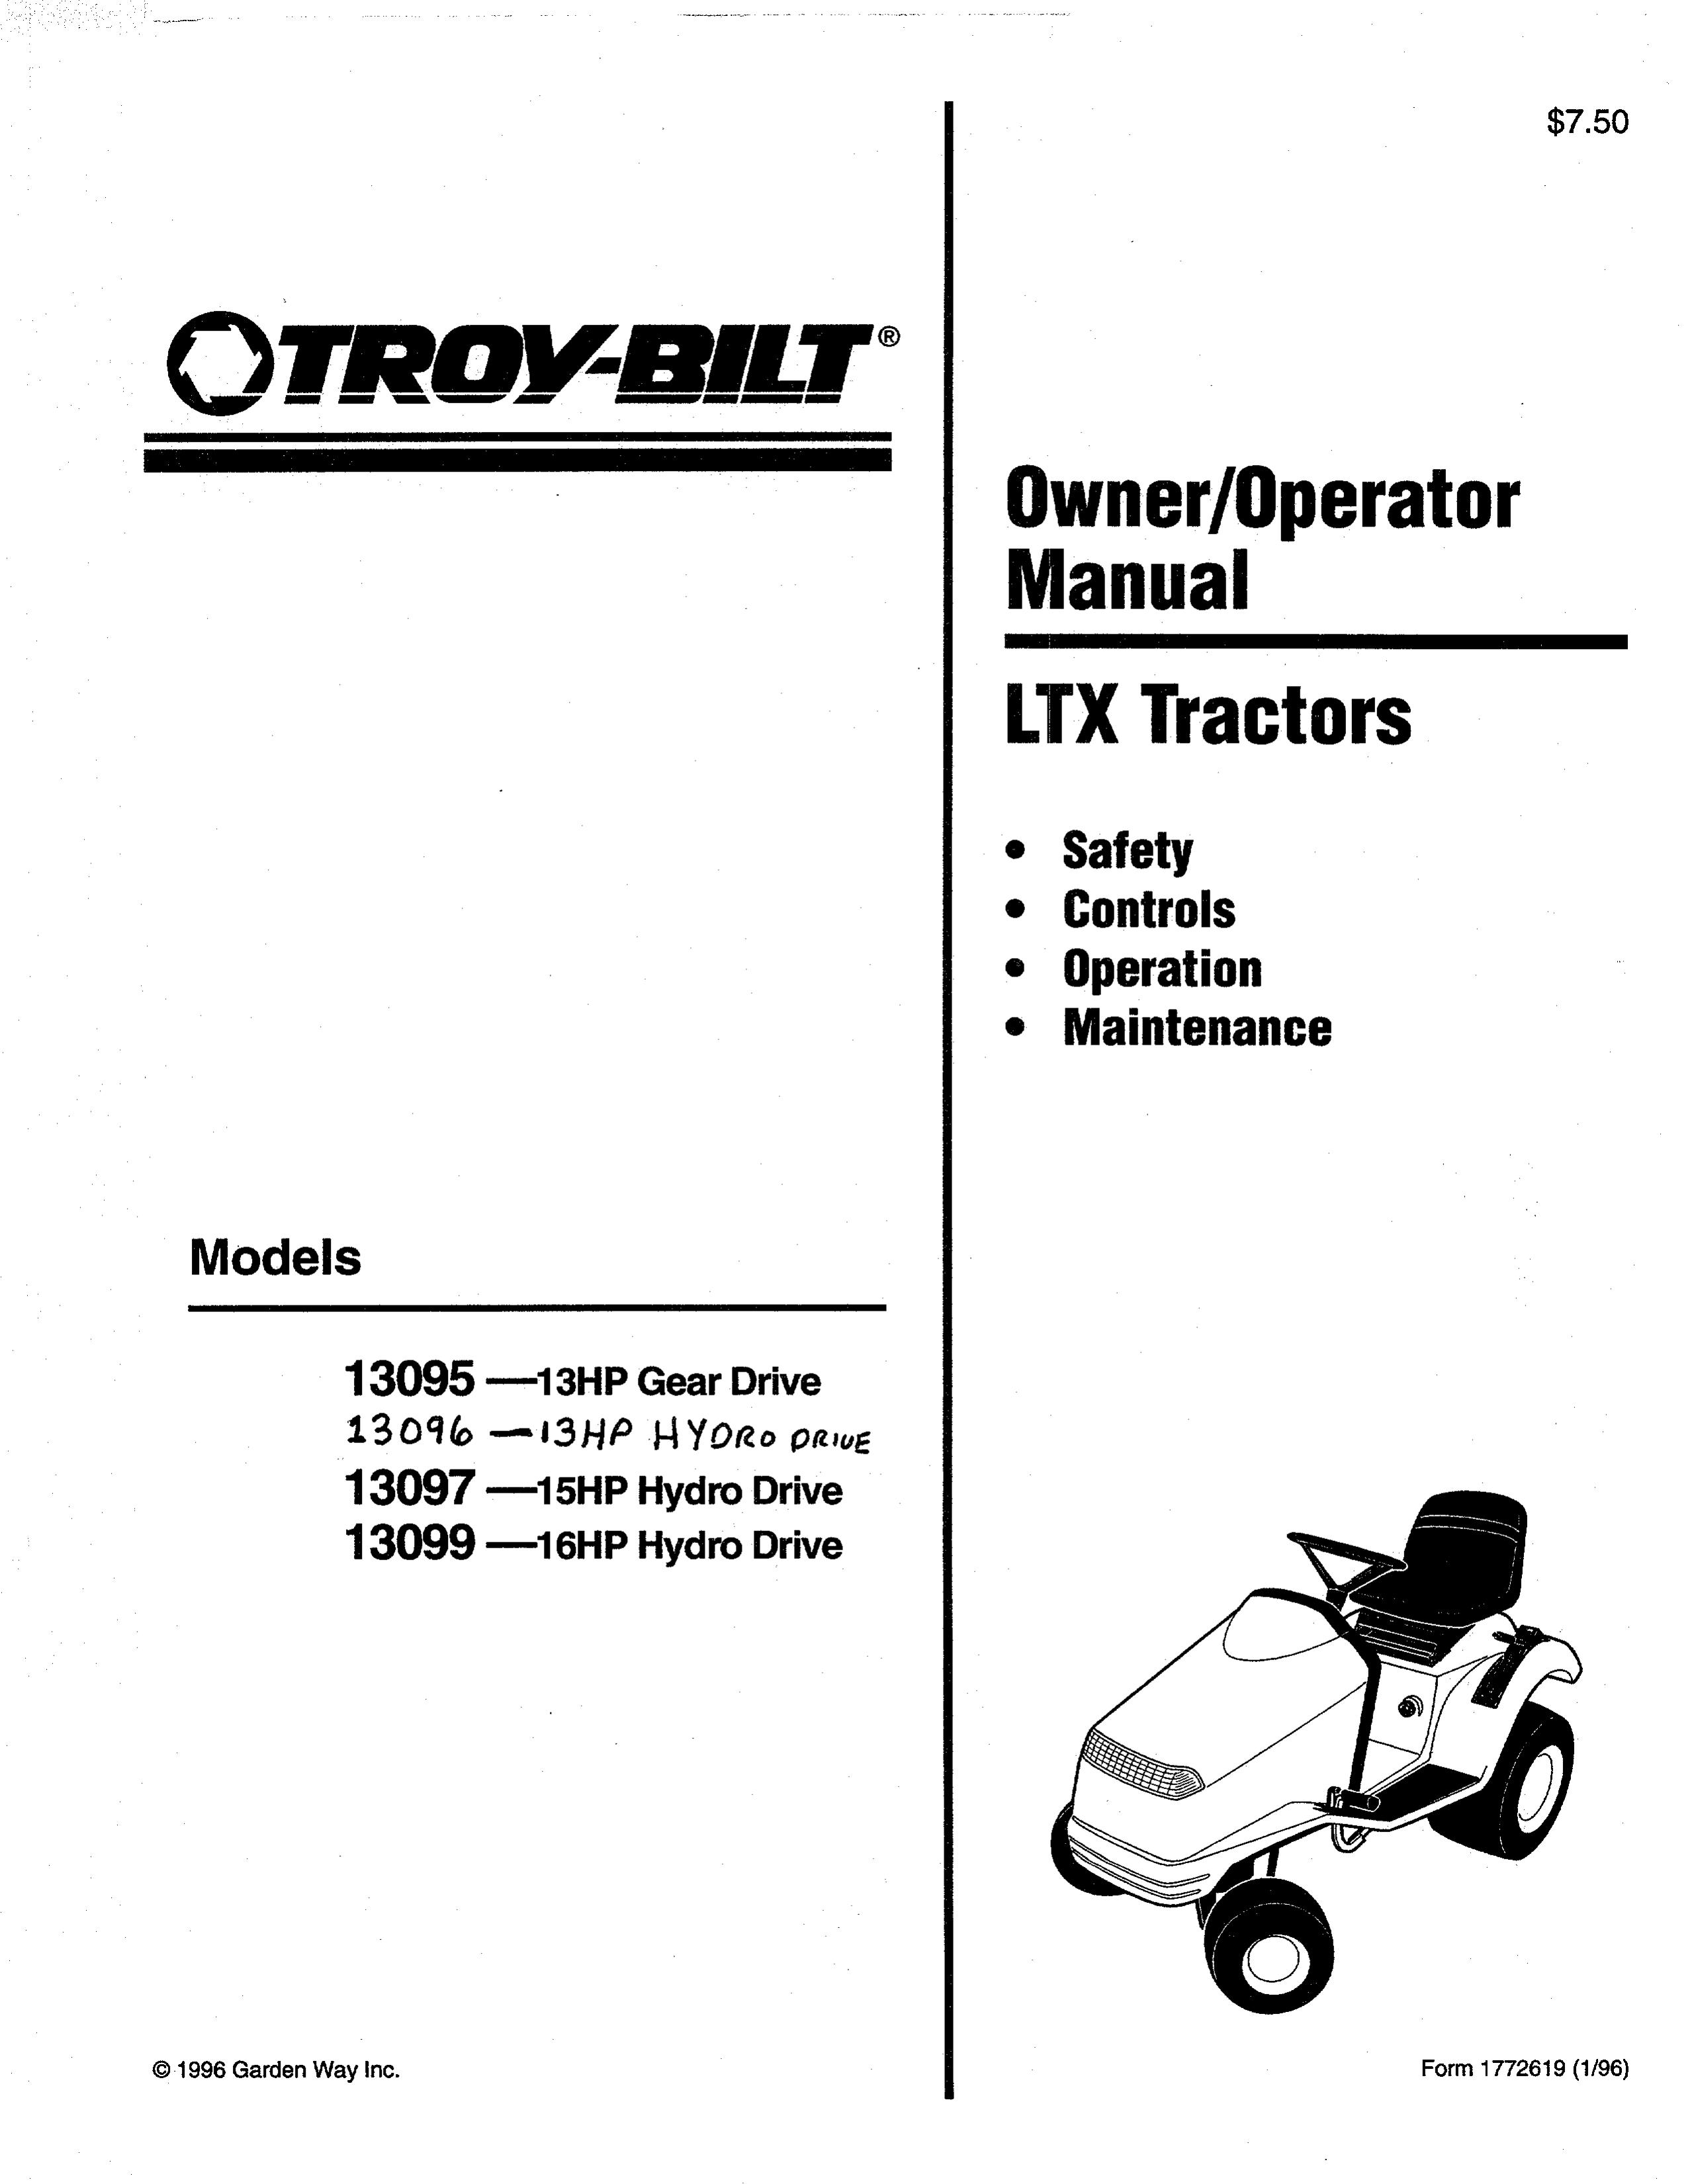 Troy-Bilt 13095 Lawn Mower User Manual